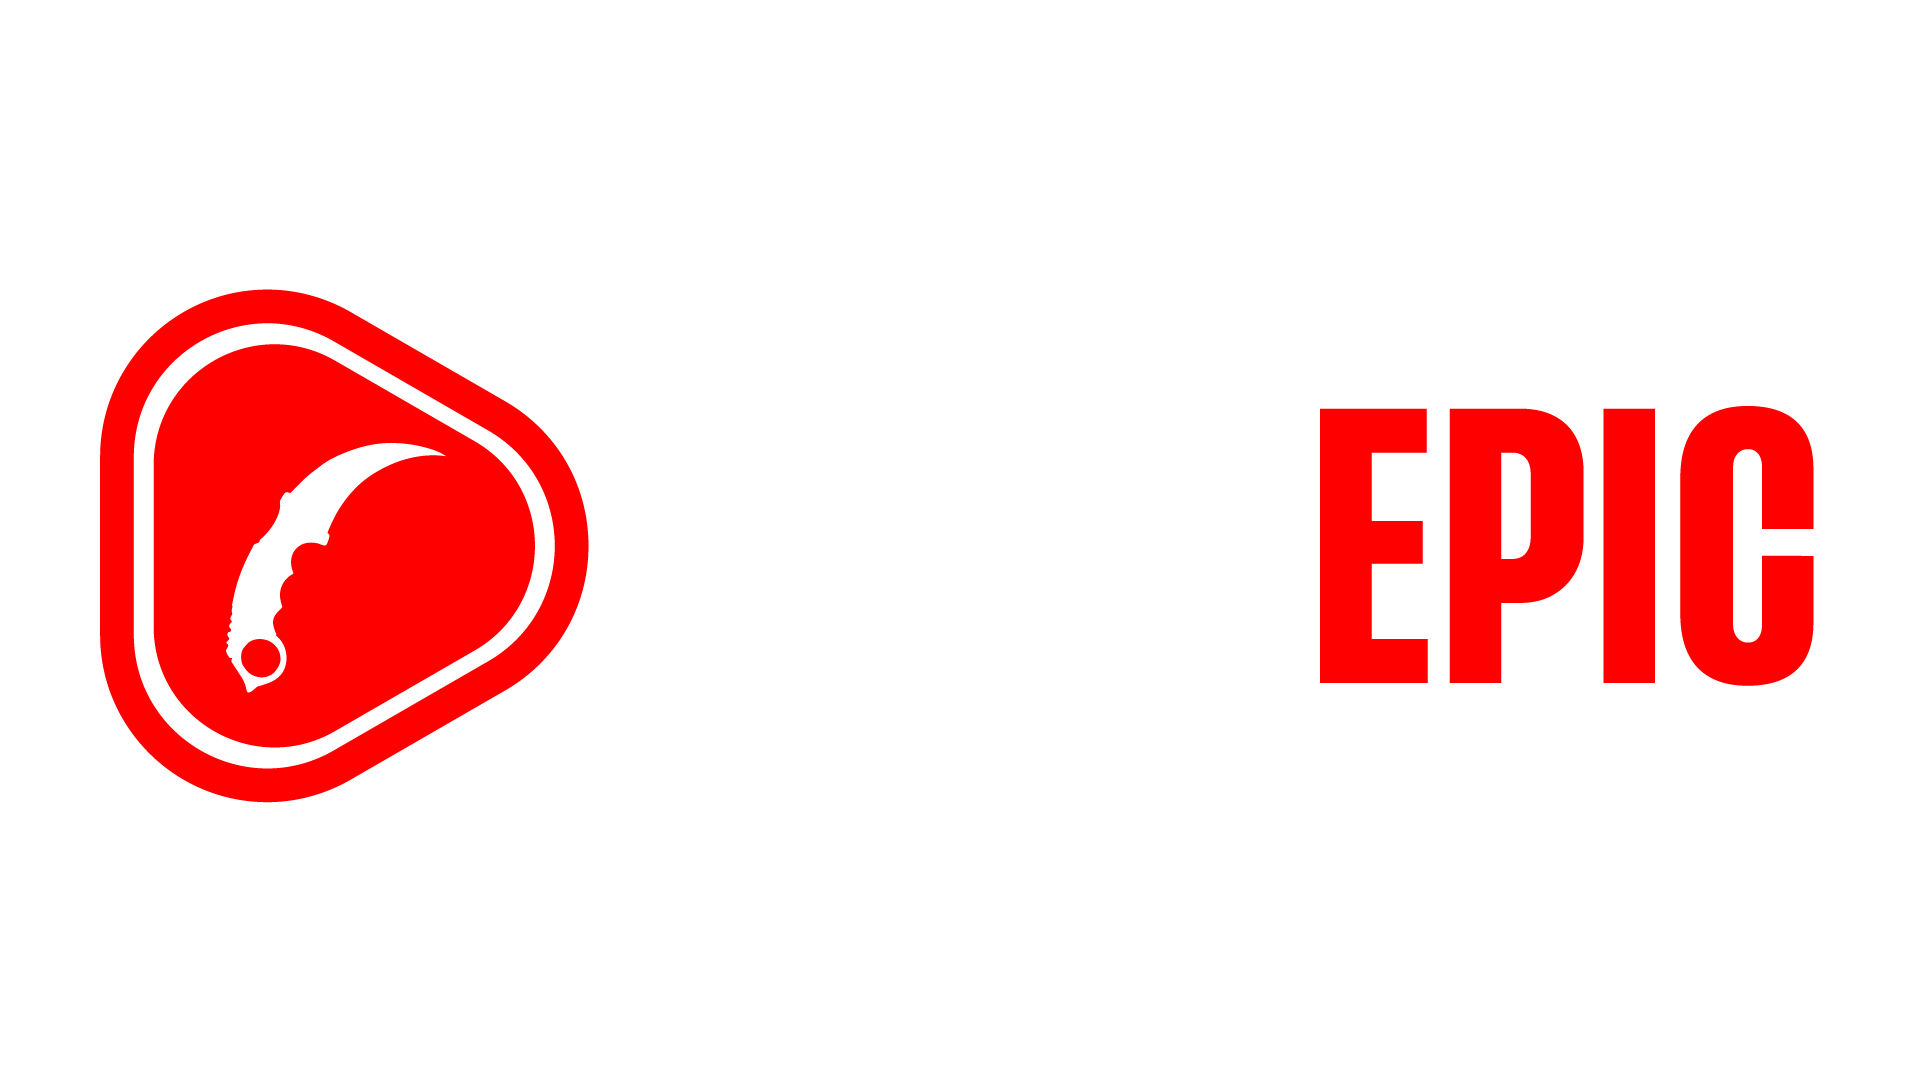 CSGOEP1C